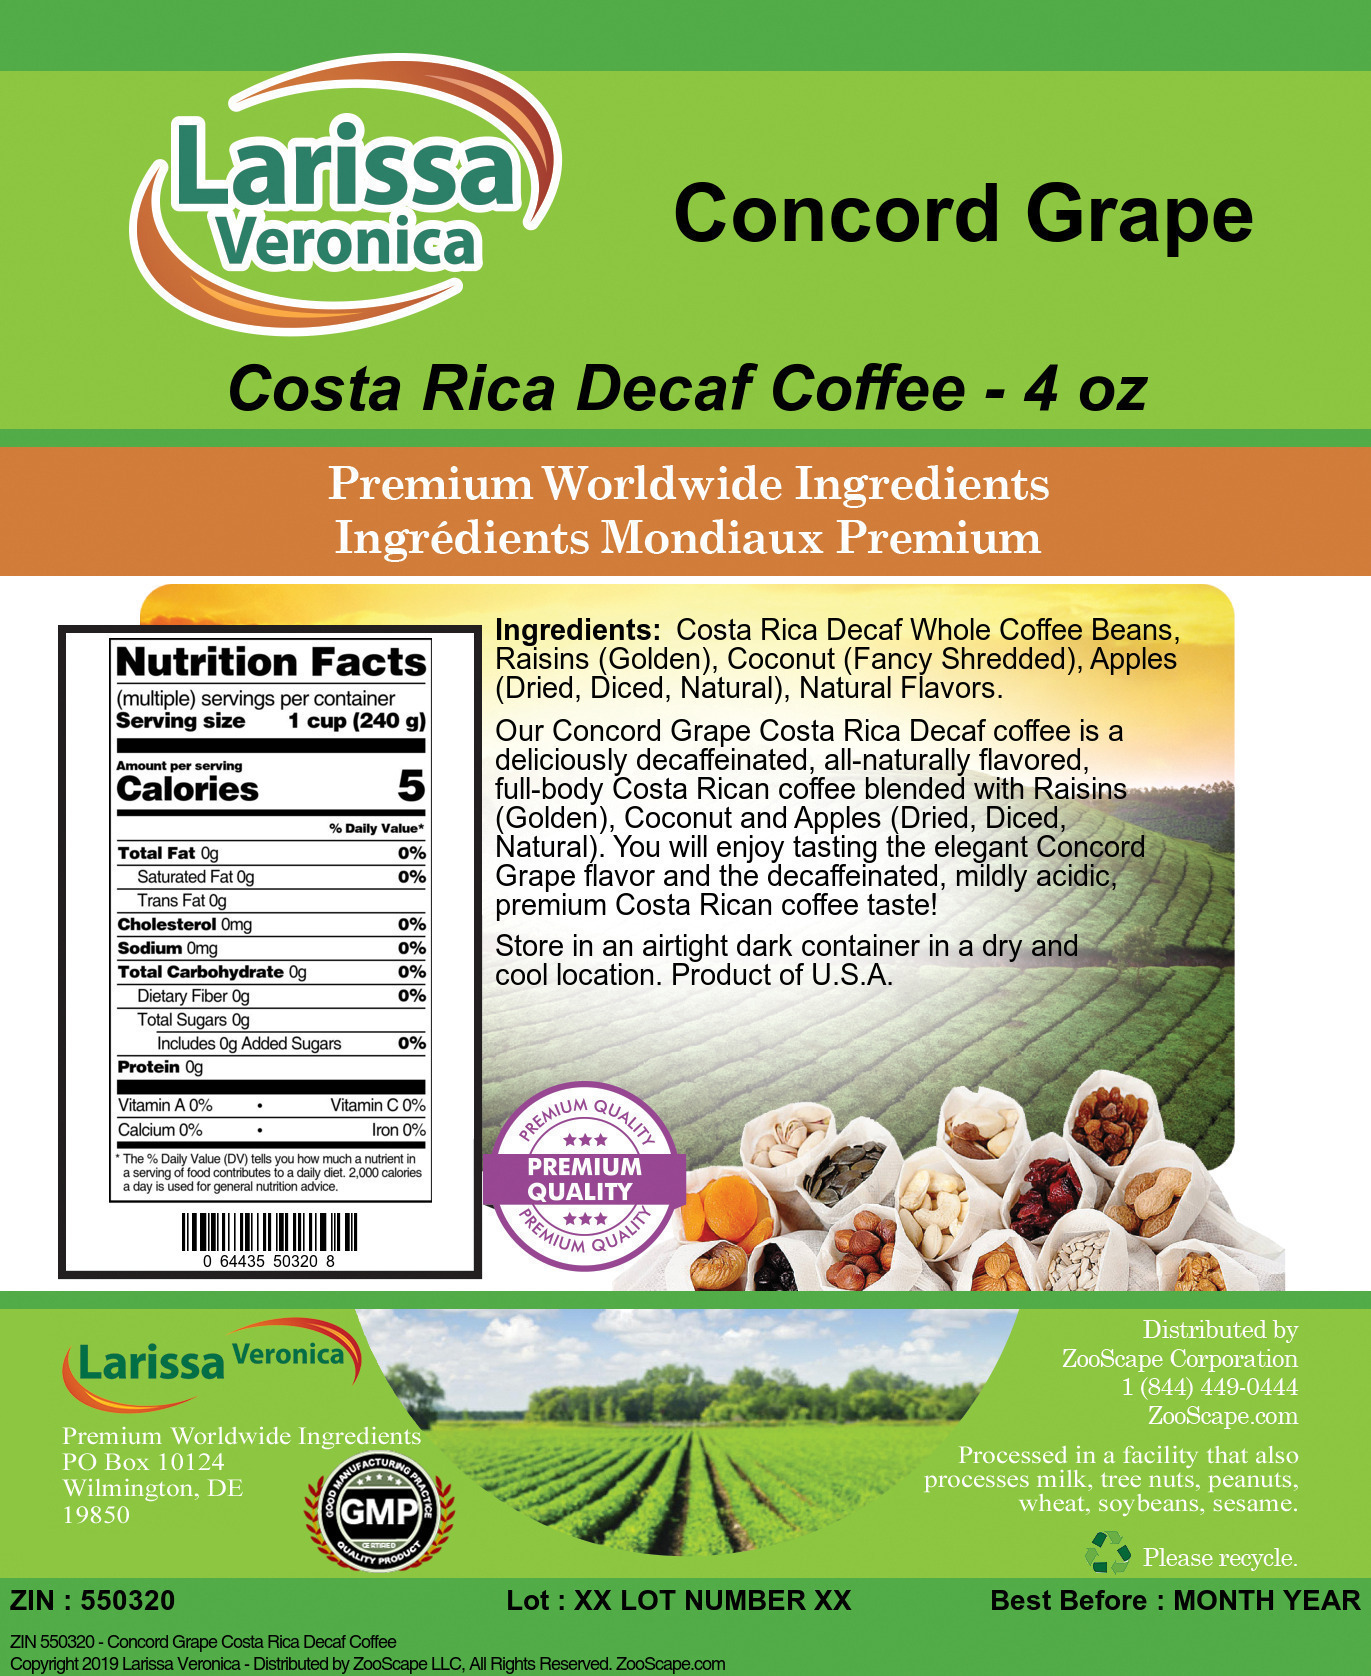 Concord Grape Costa Rica Decaf Coffee - Label